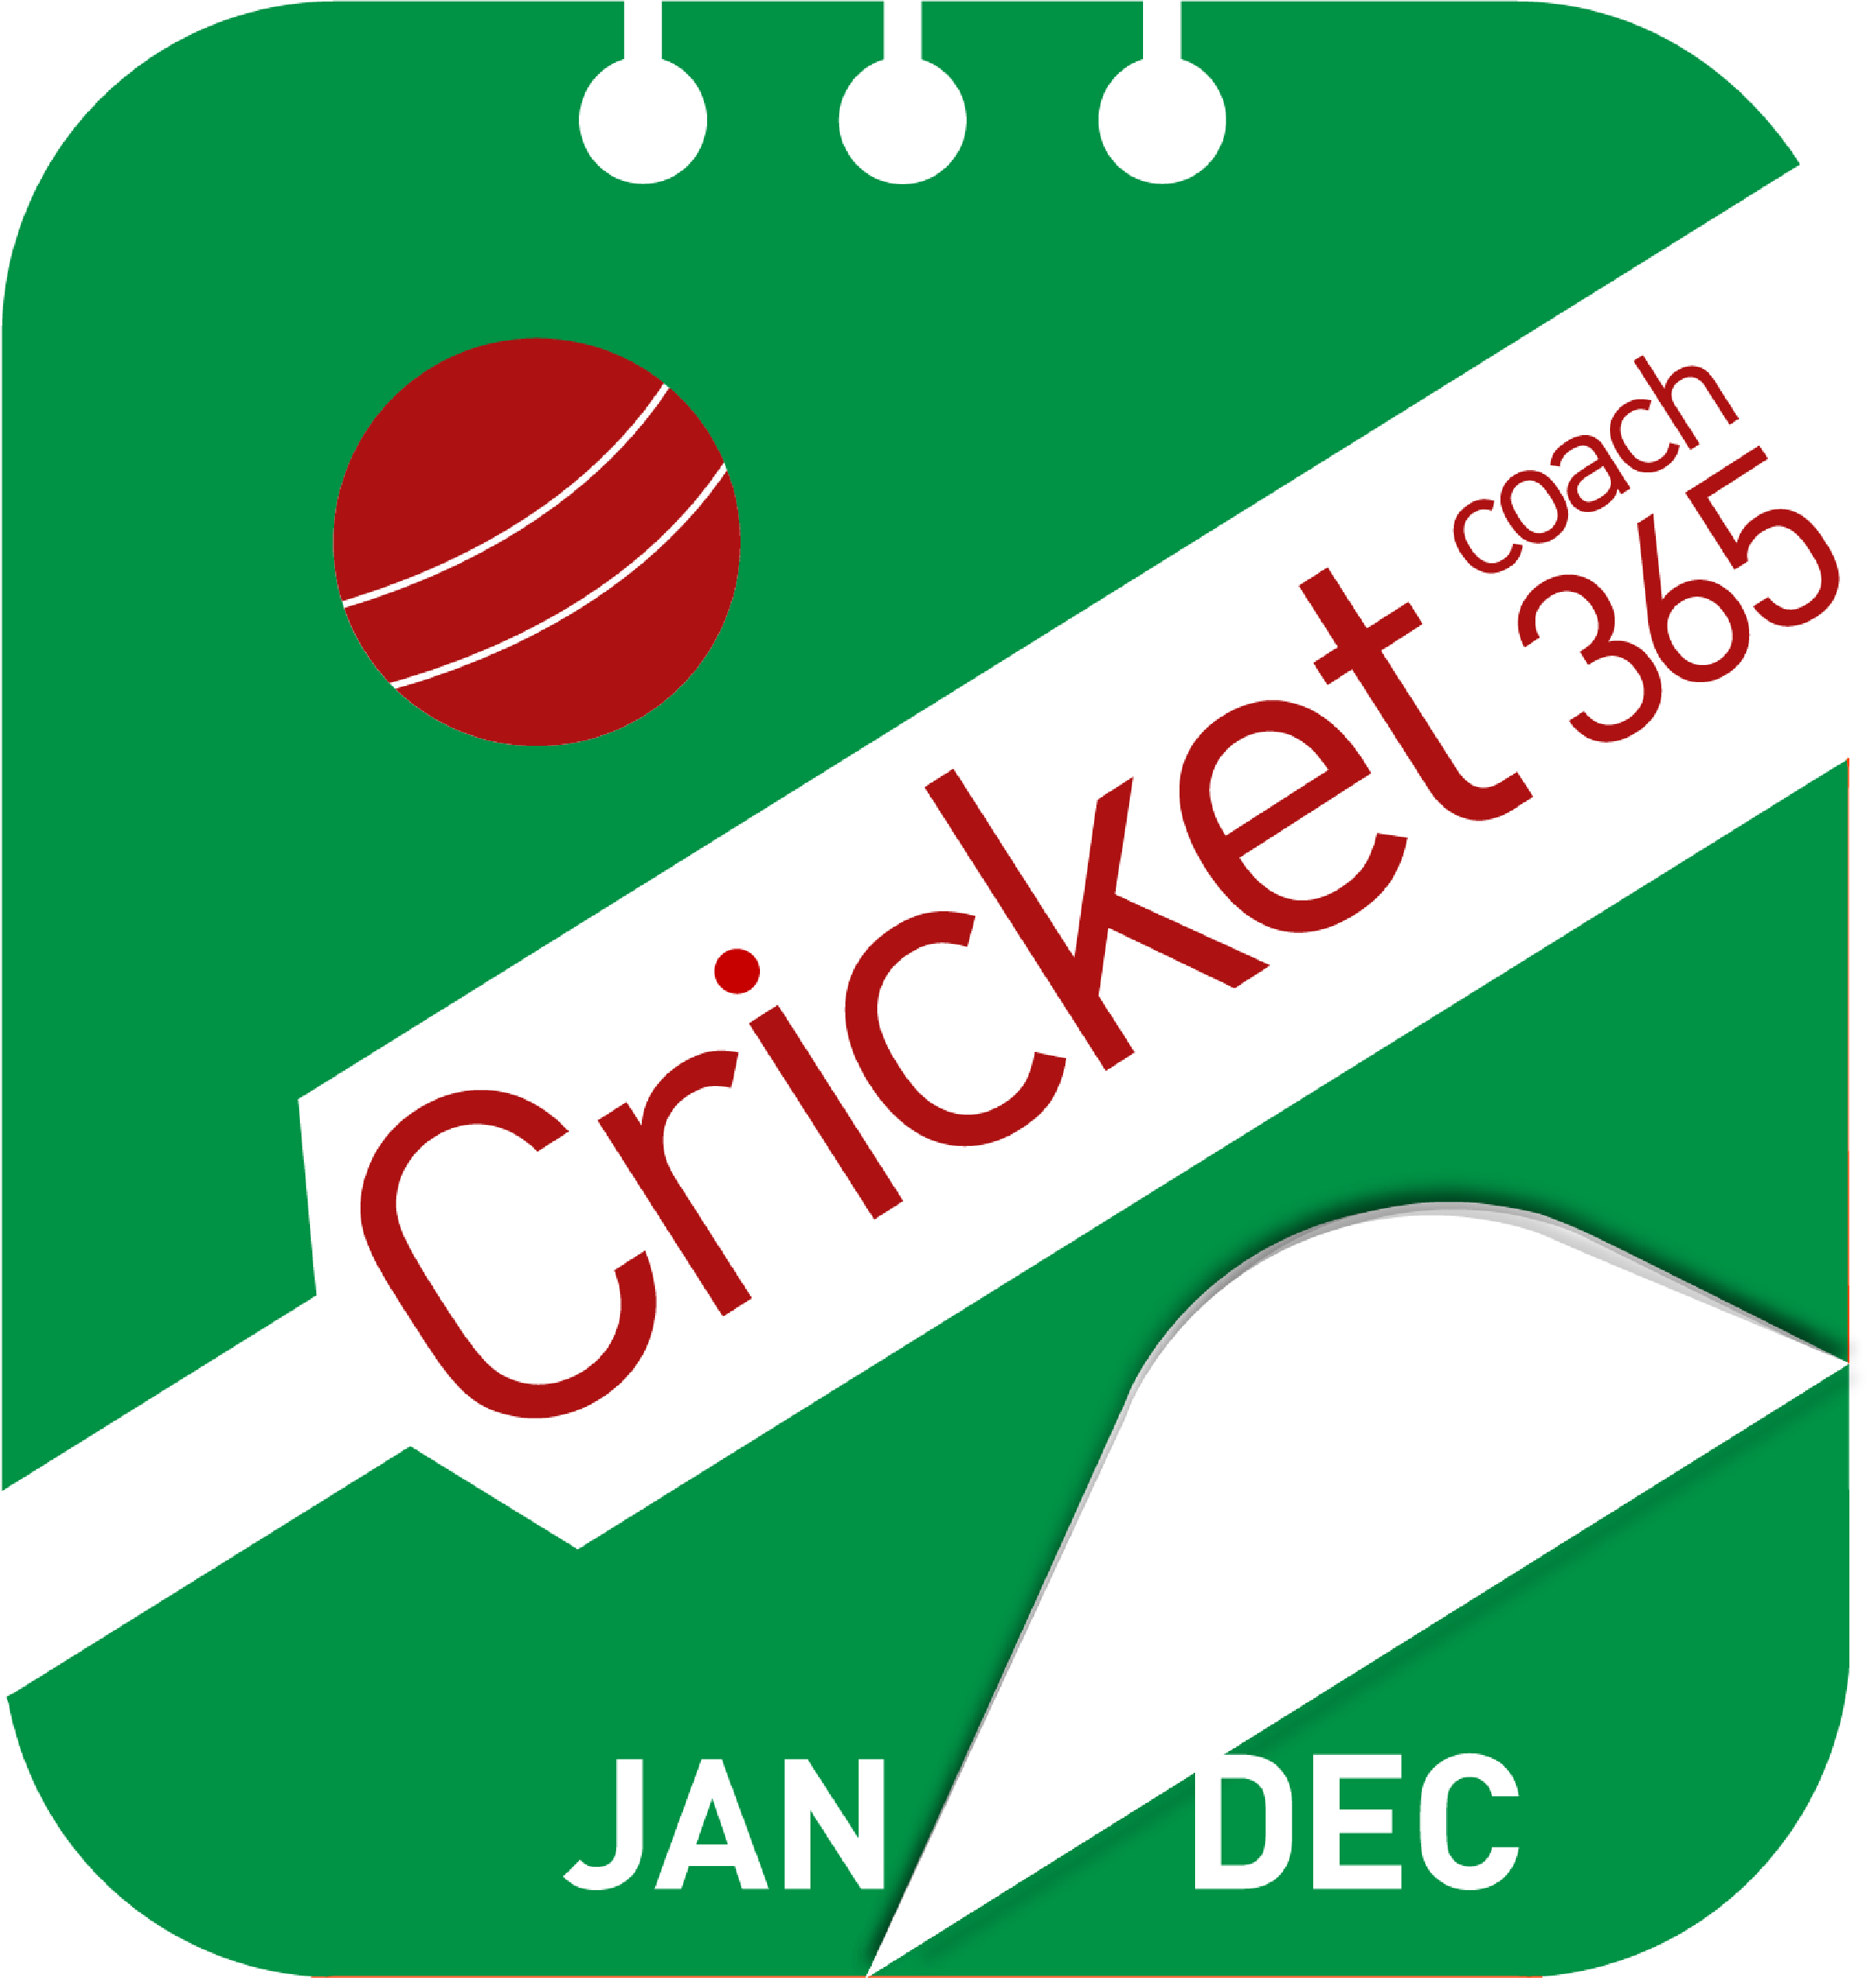 cricket_coach365